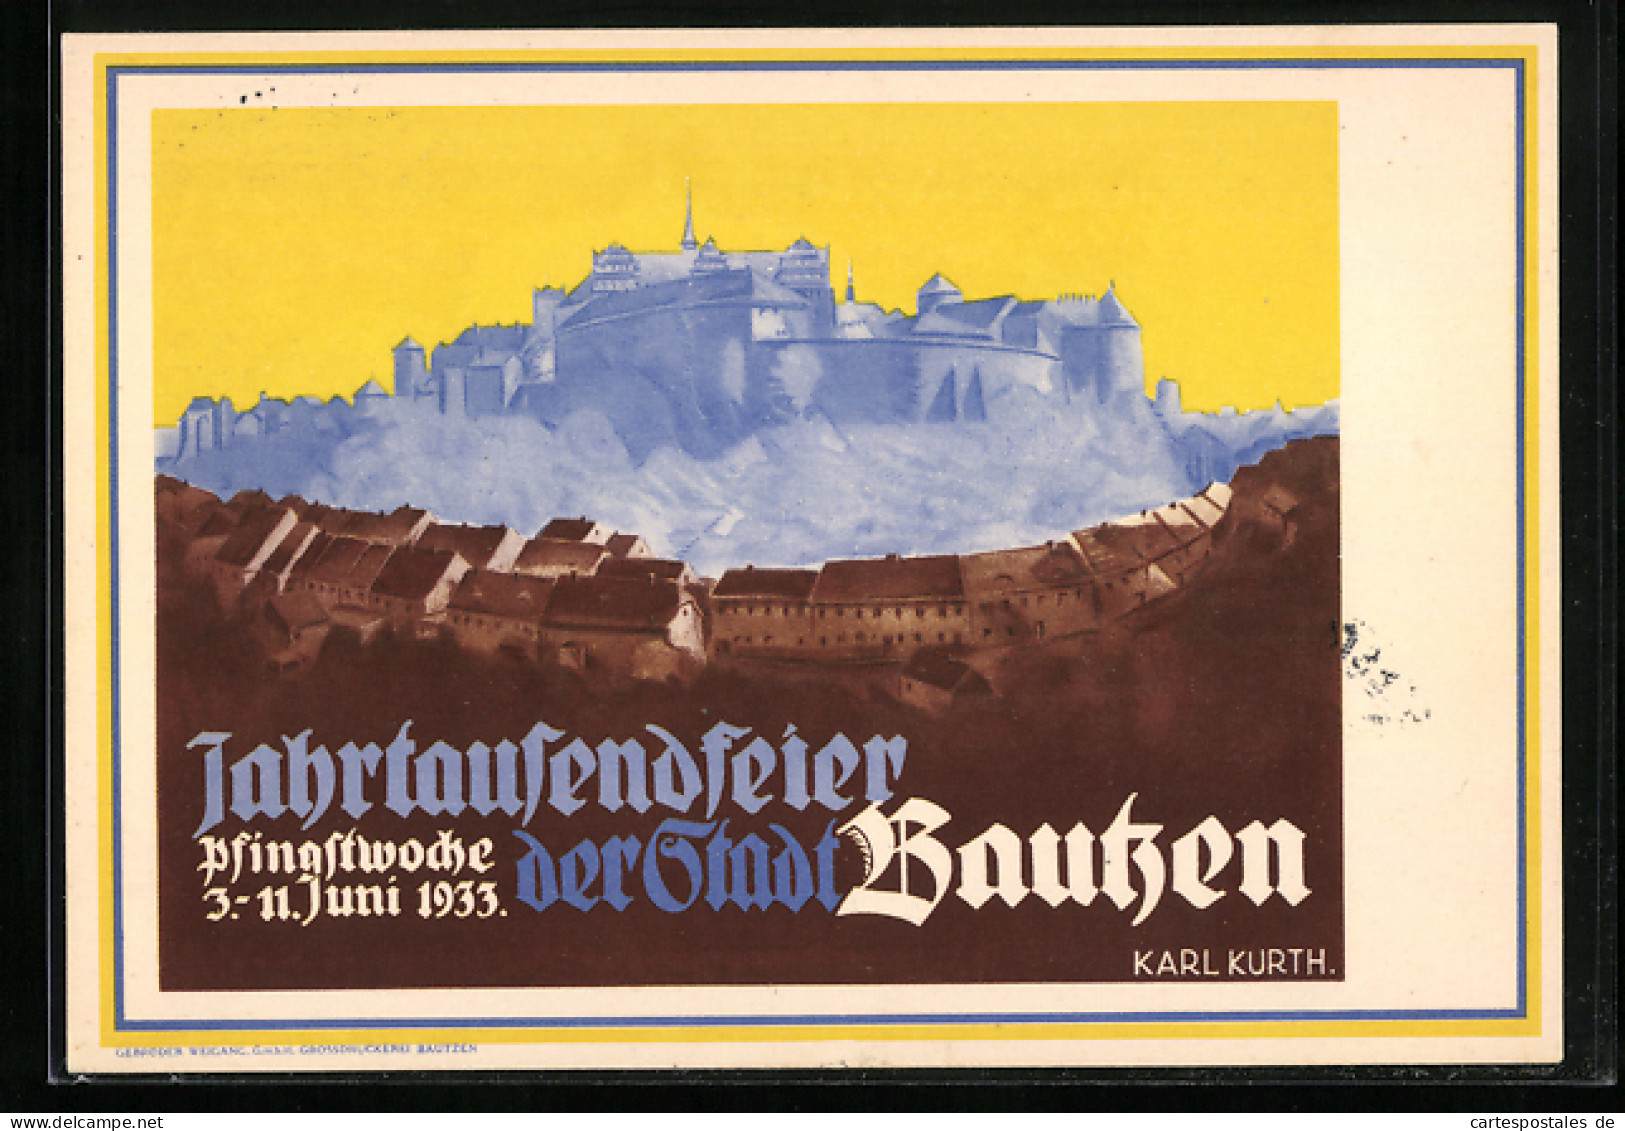 AK Bautzen, Jahrtausendfeier, Pfingstwoche 03.-11.06.1933, Häuser, Burg  - Bautzen